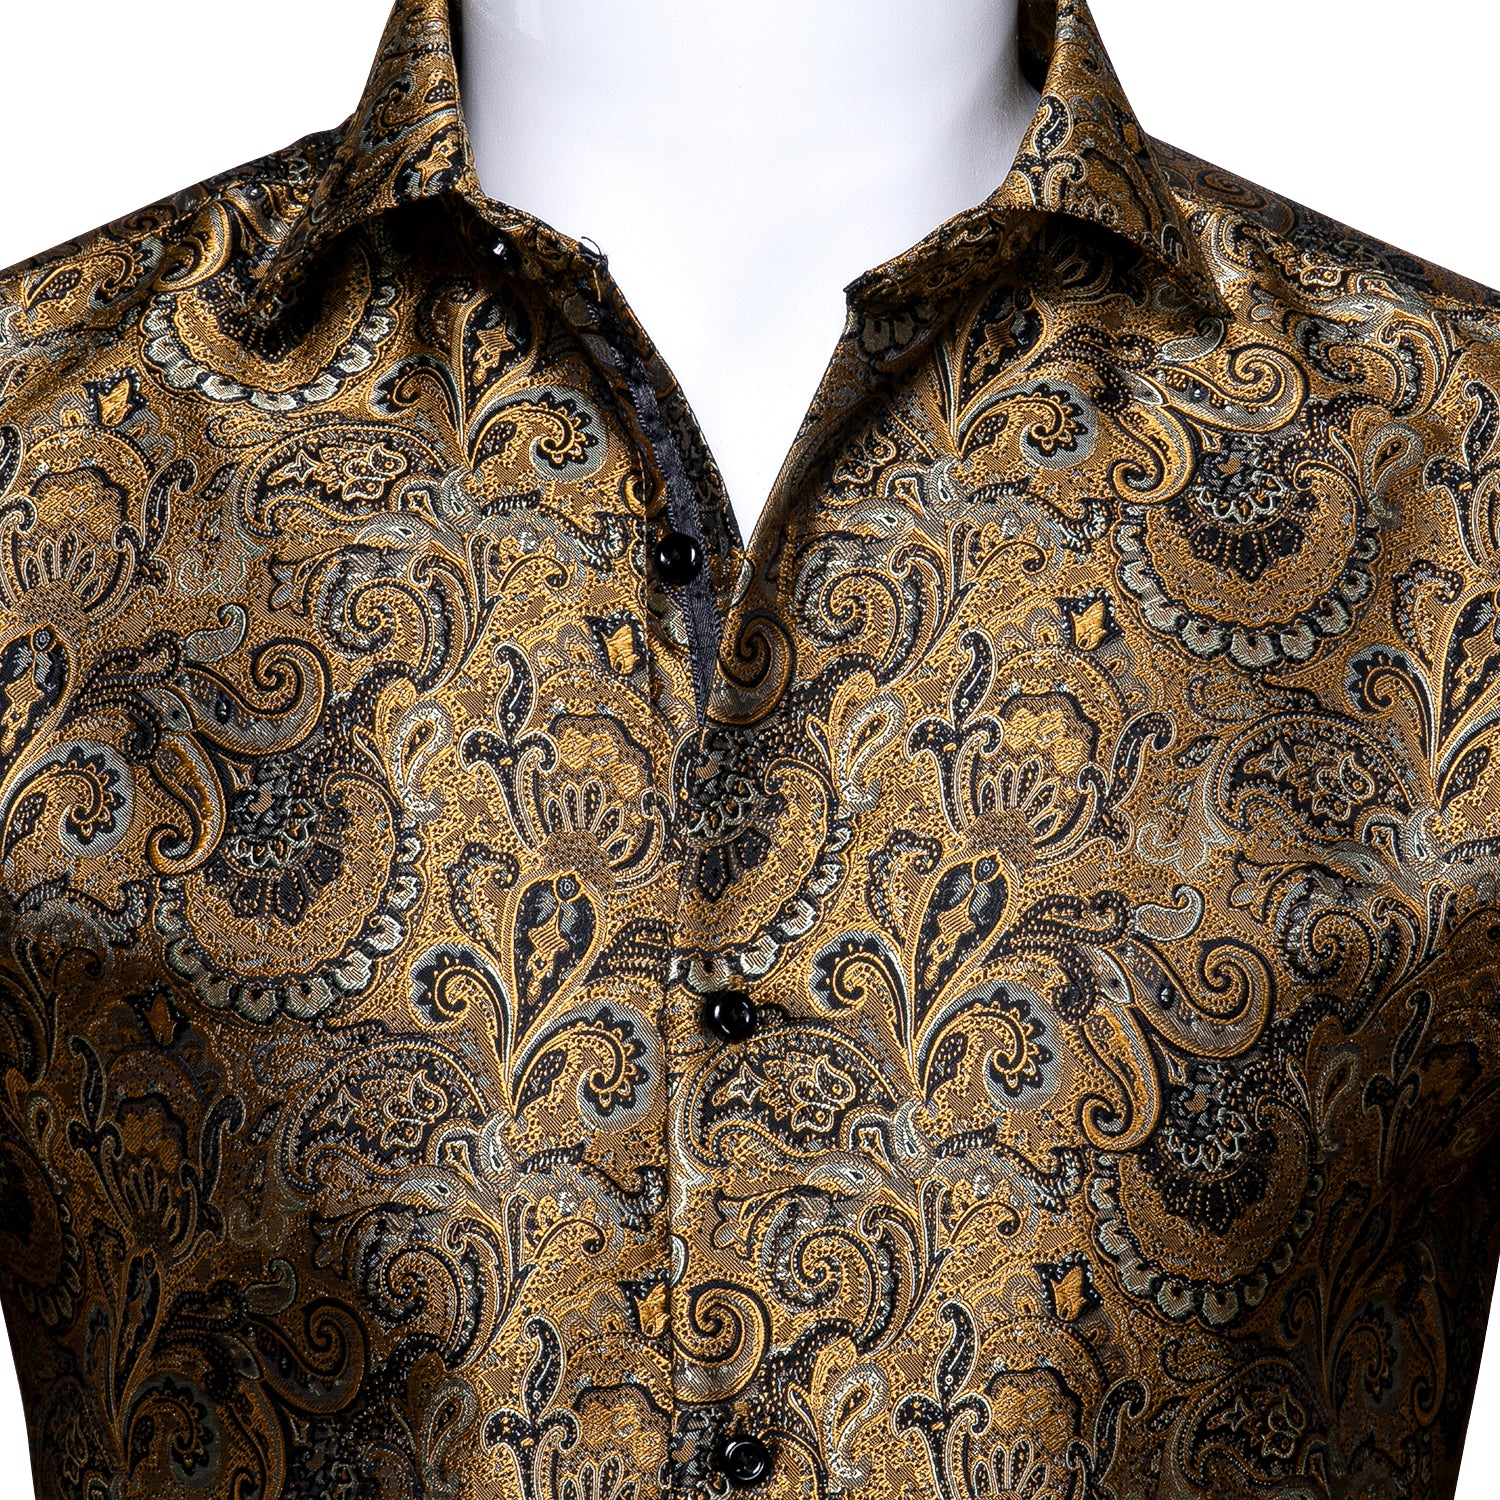 Barry.wang Button Down Shirt Golden Jacquard Woven Floral Silk Shirt